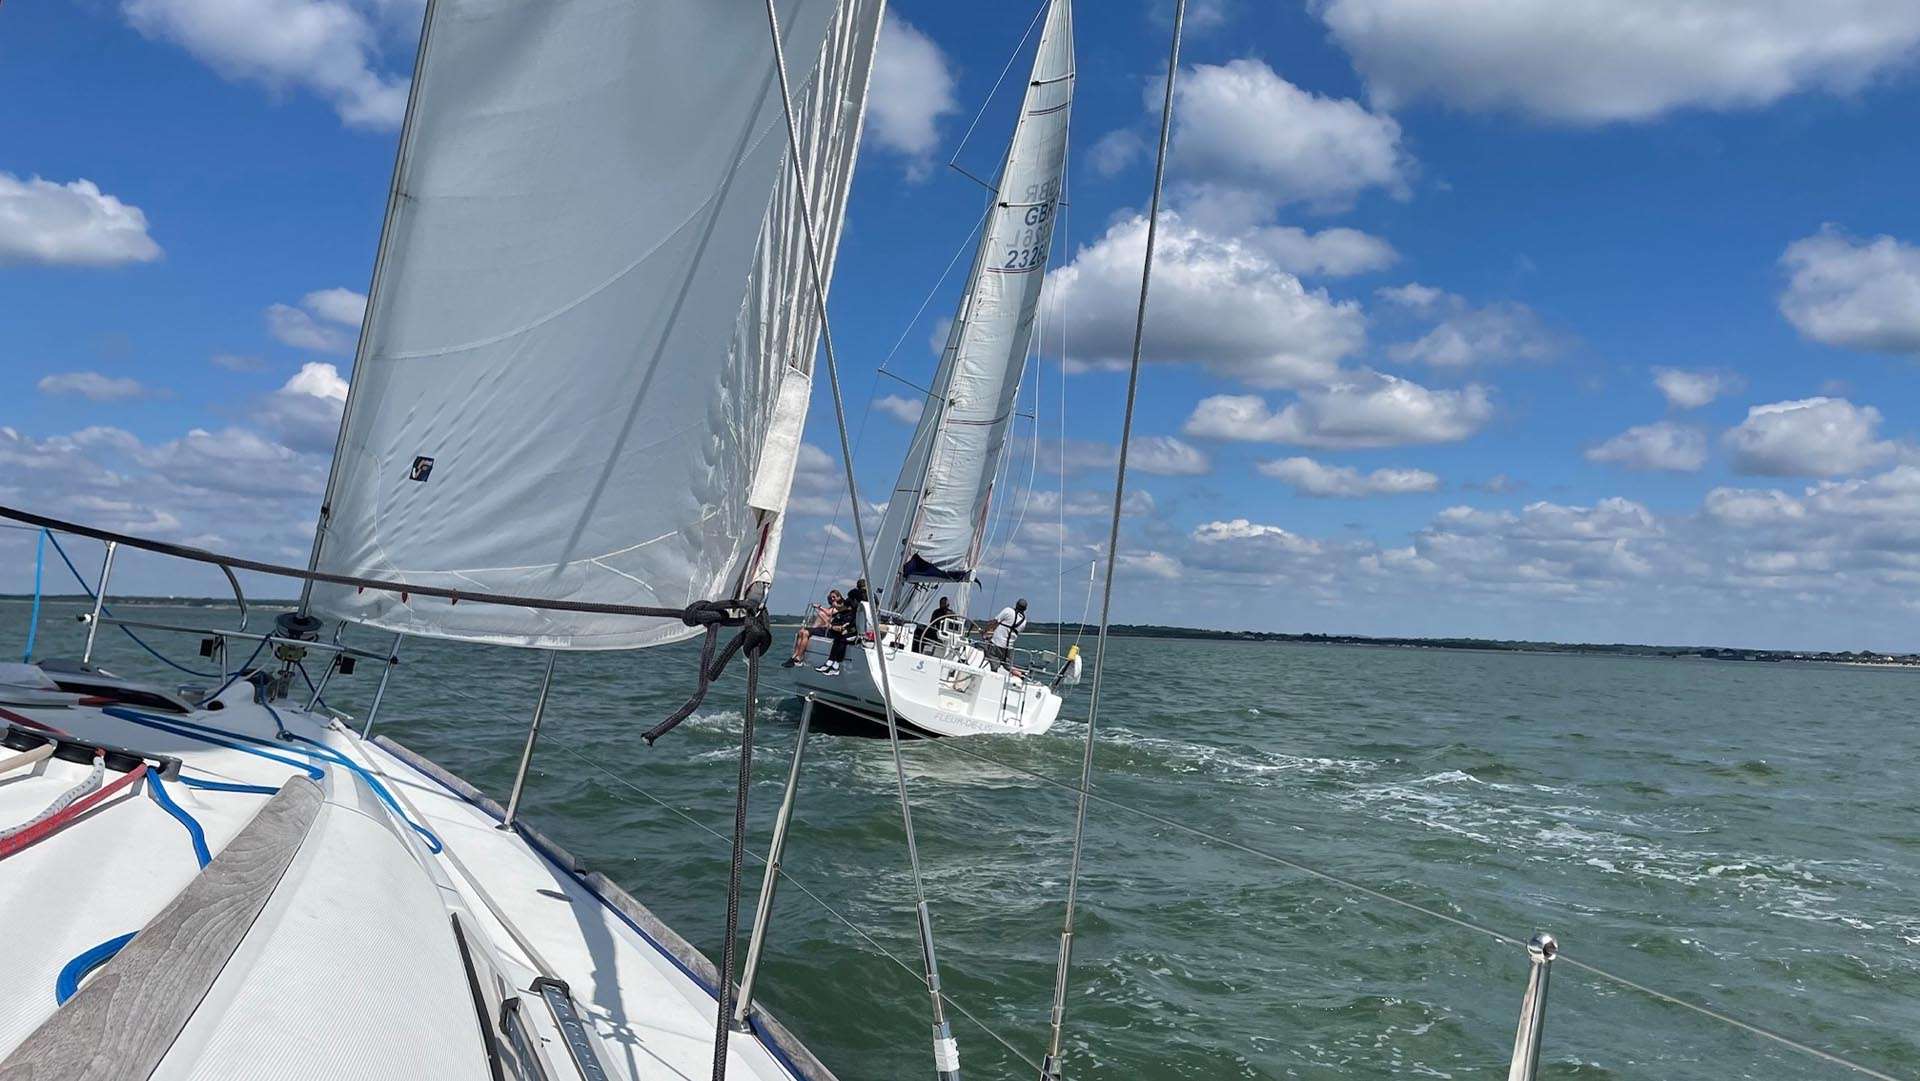 The Reginald Fessenden Sailing Challenge 2021